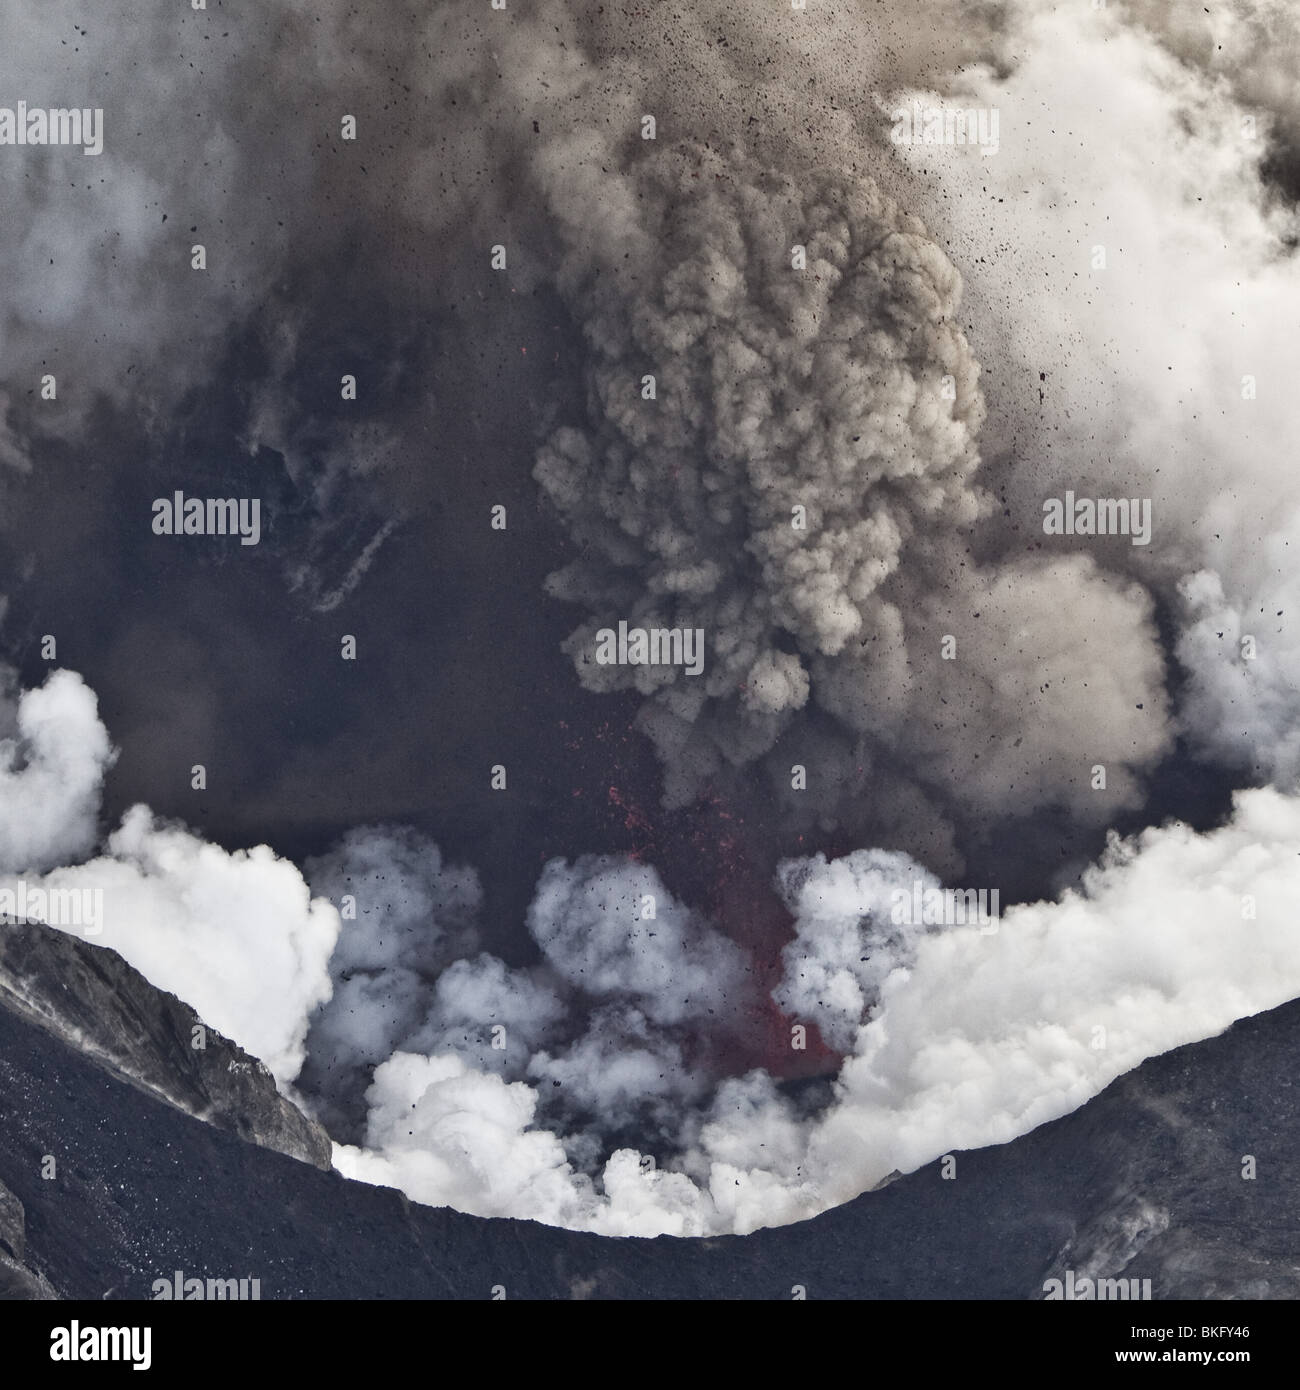 Luftbild der Aschewolke vom Vulkanausbruch ...